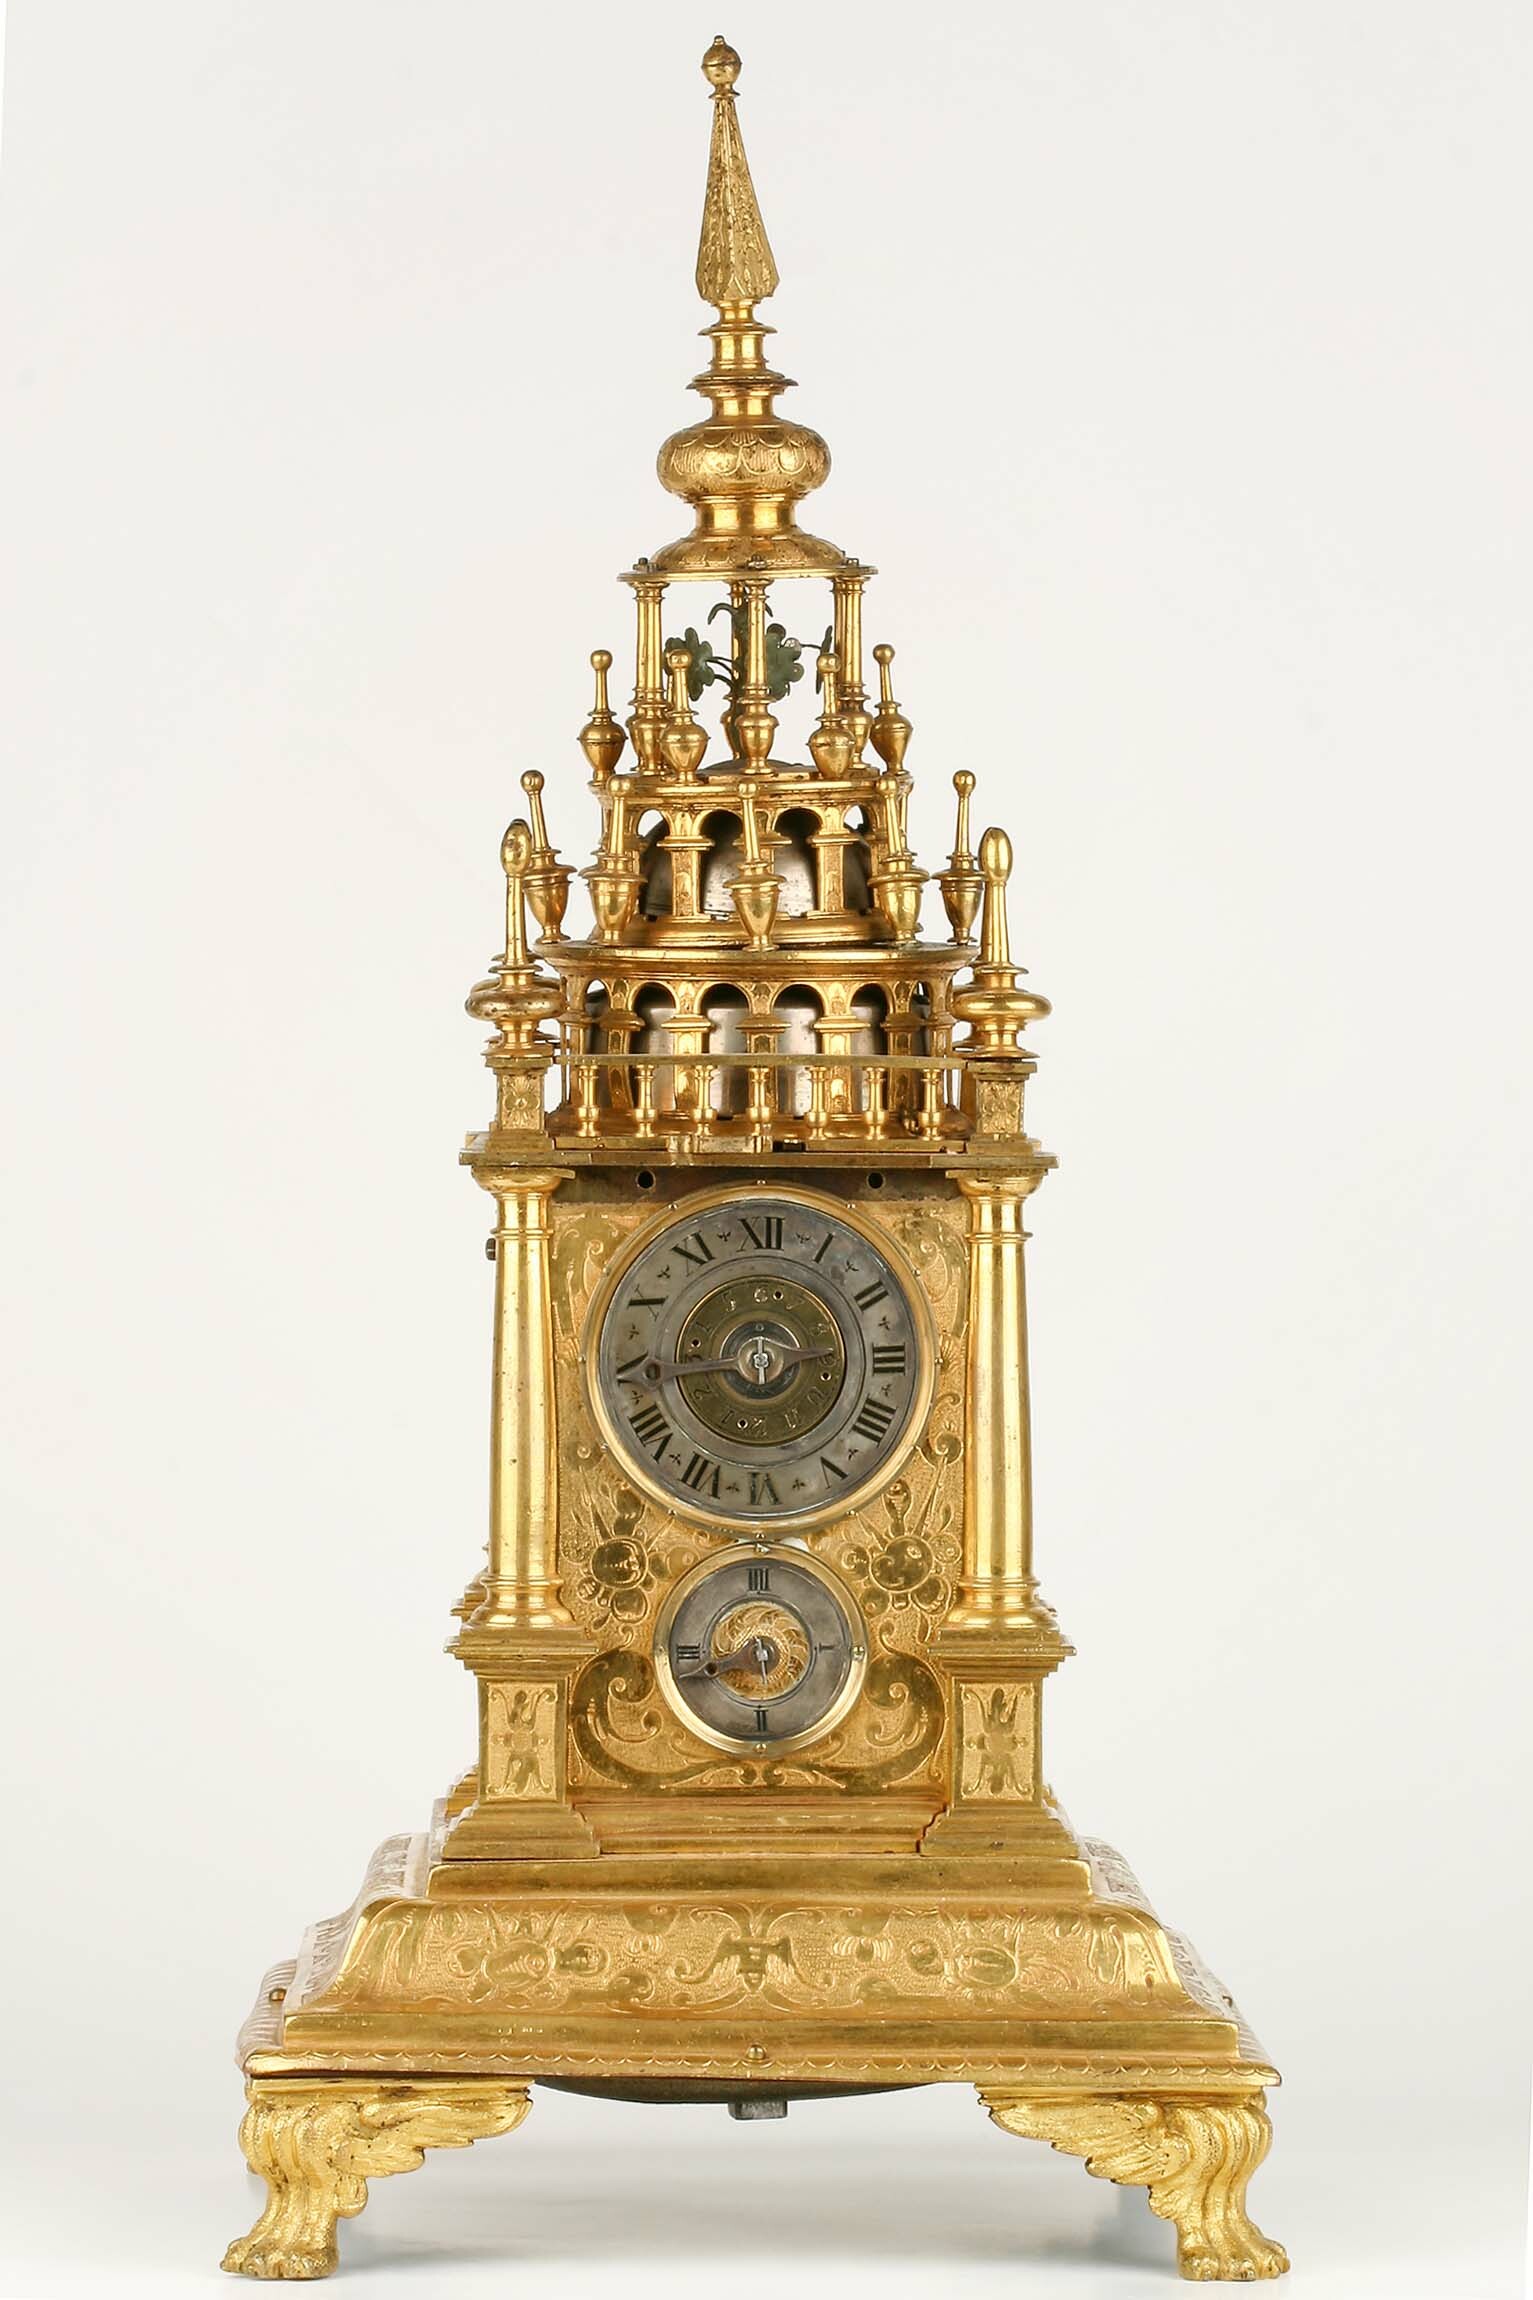 Türmchenuhr, Samuel Haug, Augsburg, um 1620 (Deutsches Uhrenmuseum CC BY-SA)